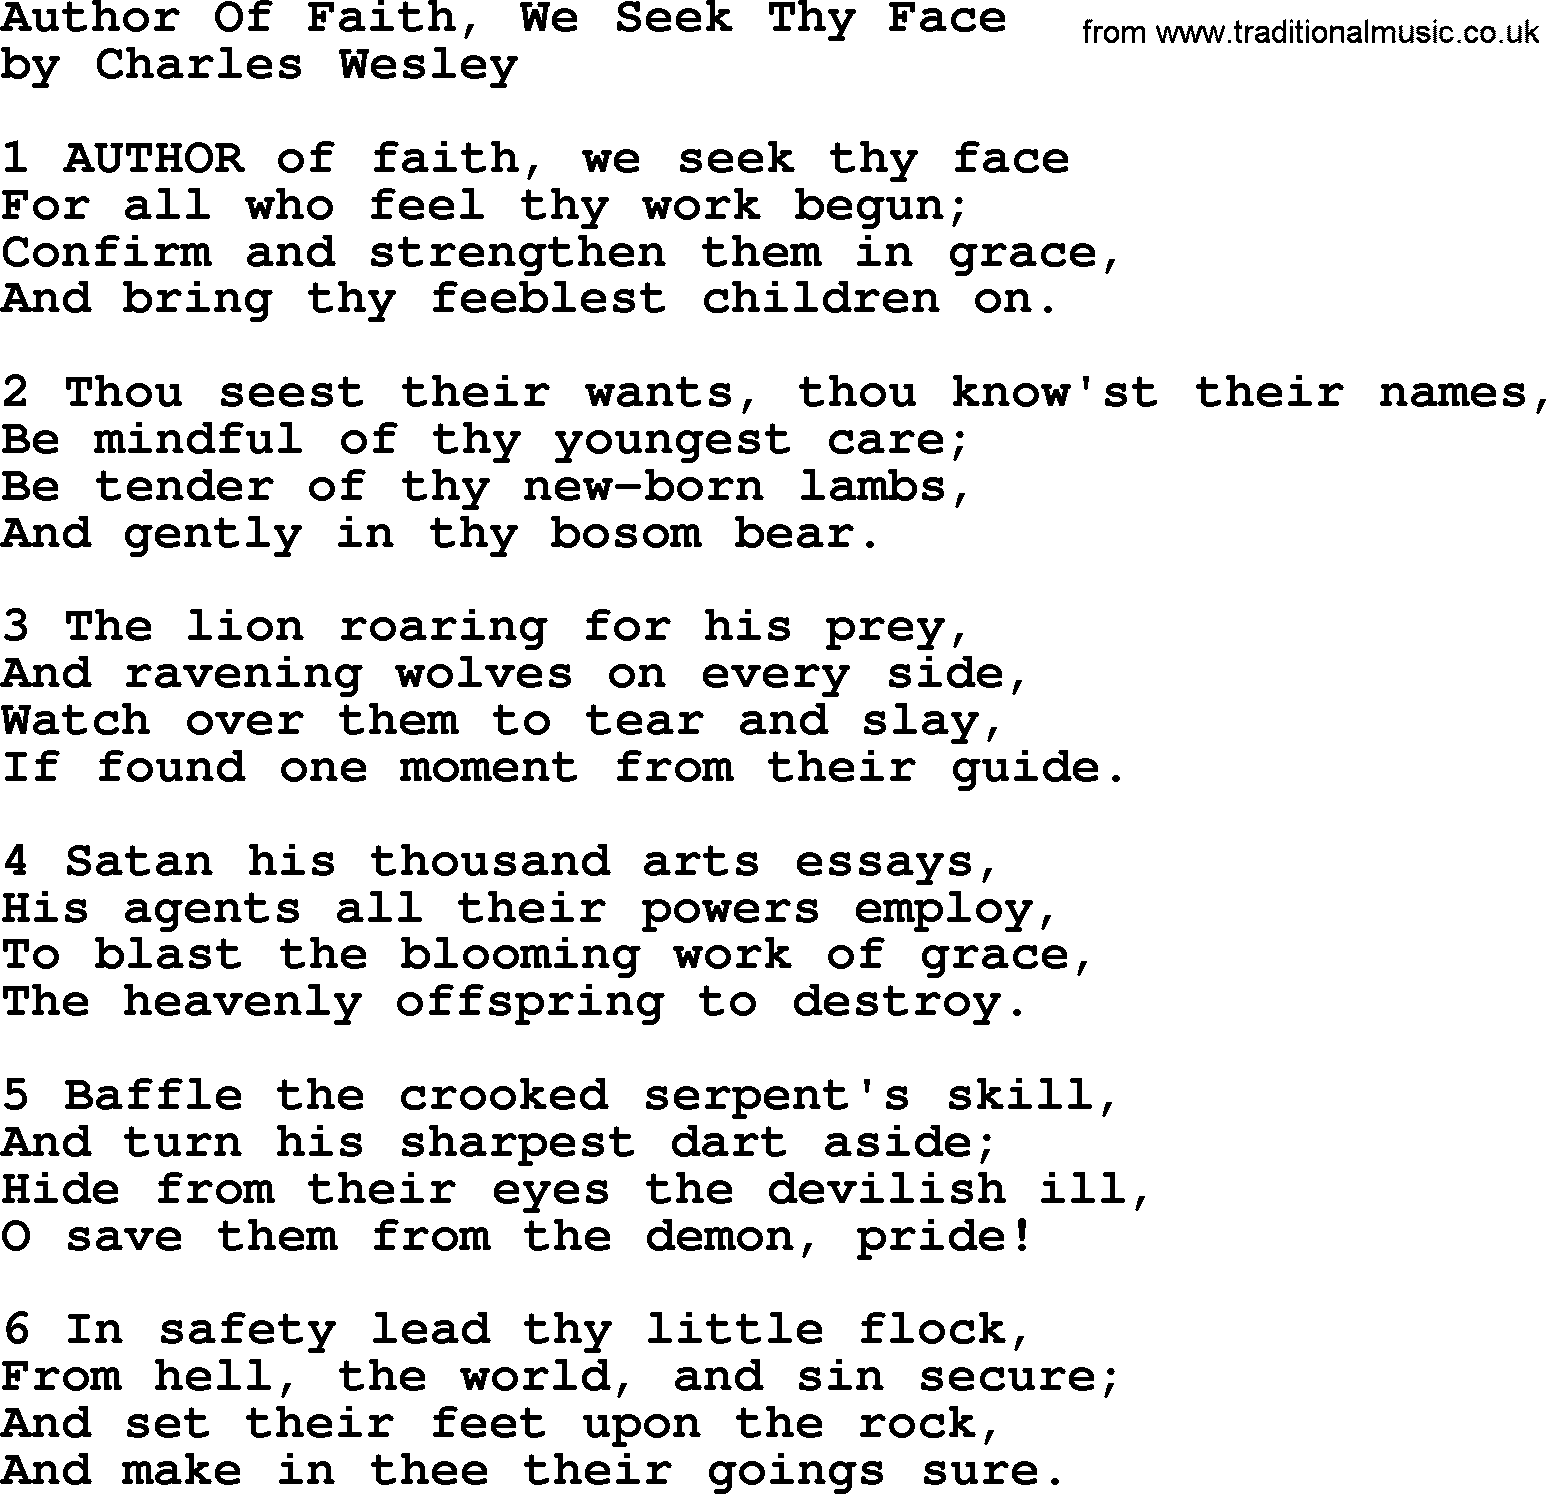 Charles Wesley hymn: Author Of Faith, We Seek Thy Face, lyrics